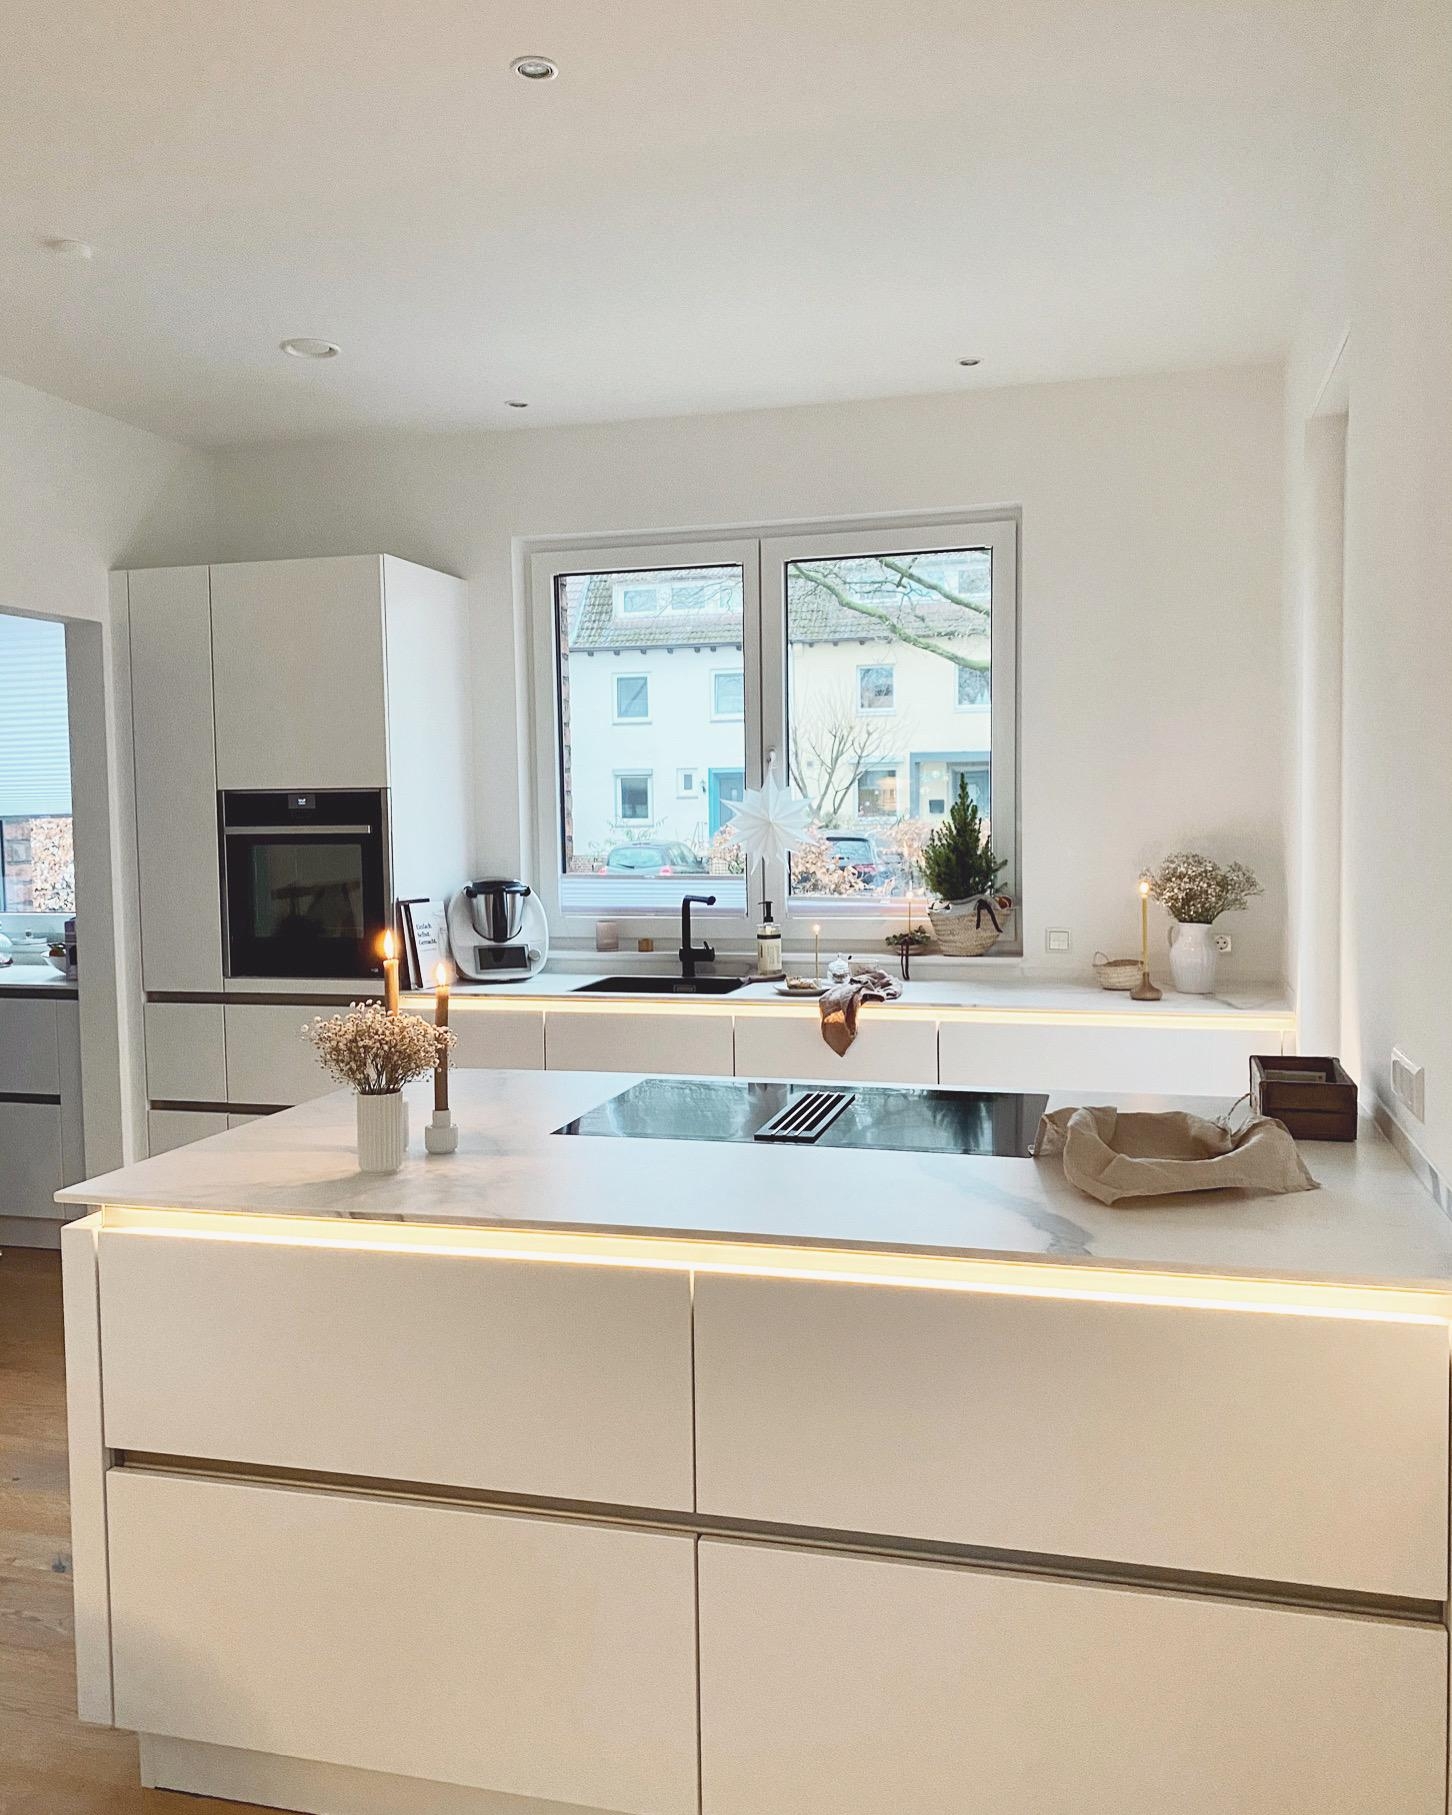 Hello from my kitchen 🤍
#whitekitchen#weisseküche#interiorblogger#couchliebt#whiteliving#whiteinterior#interior